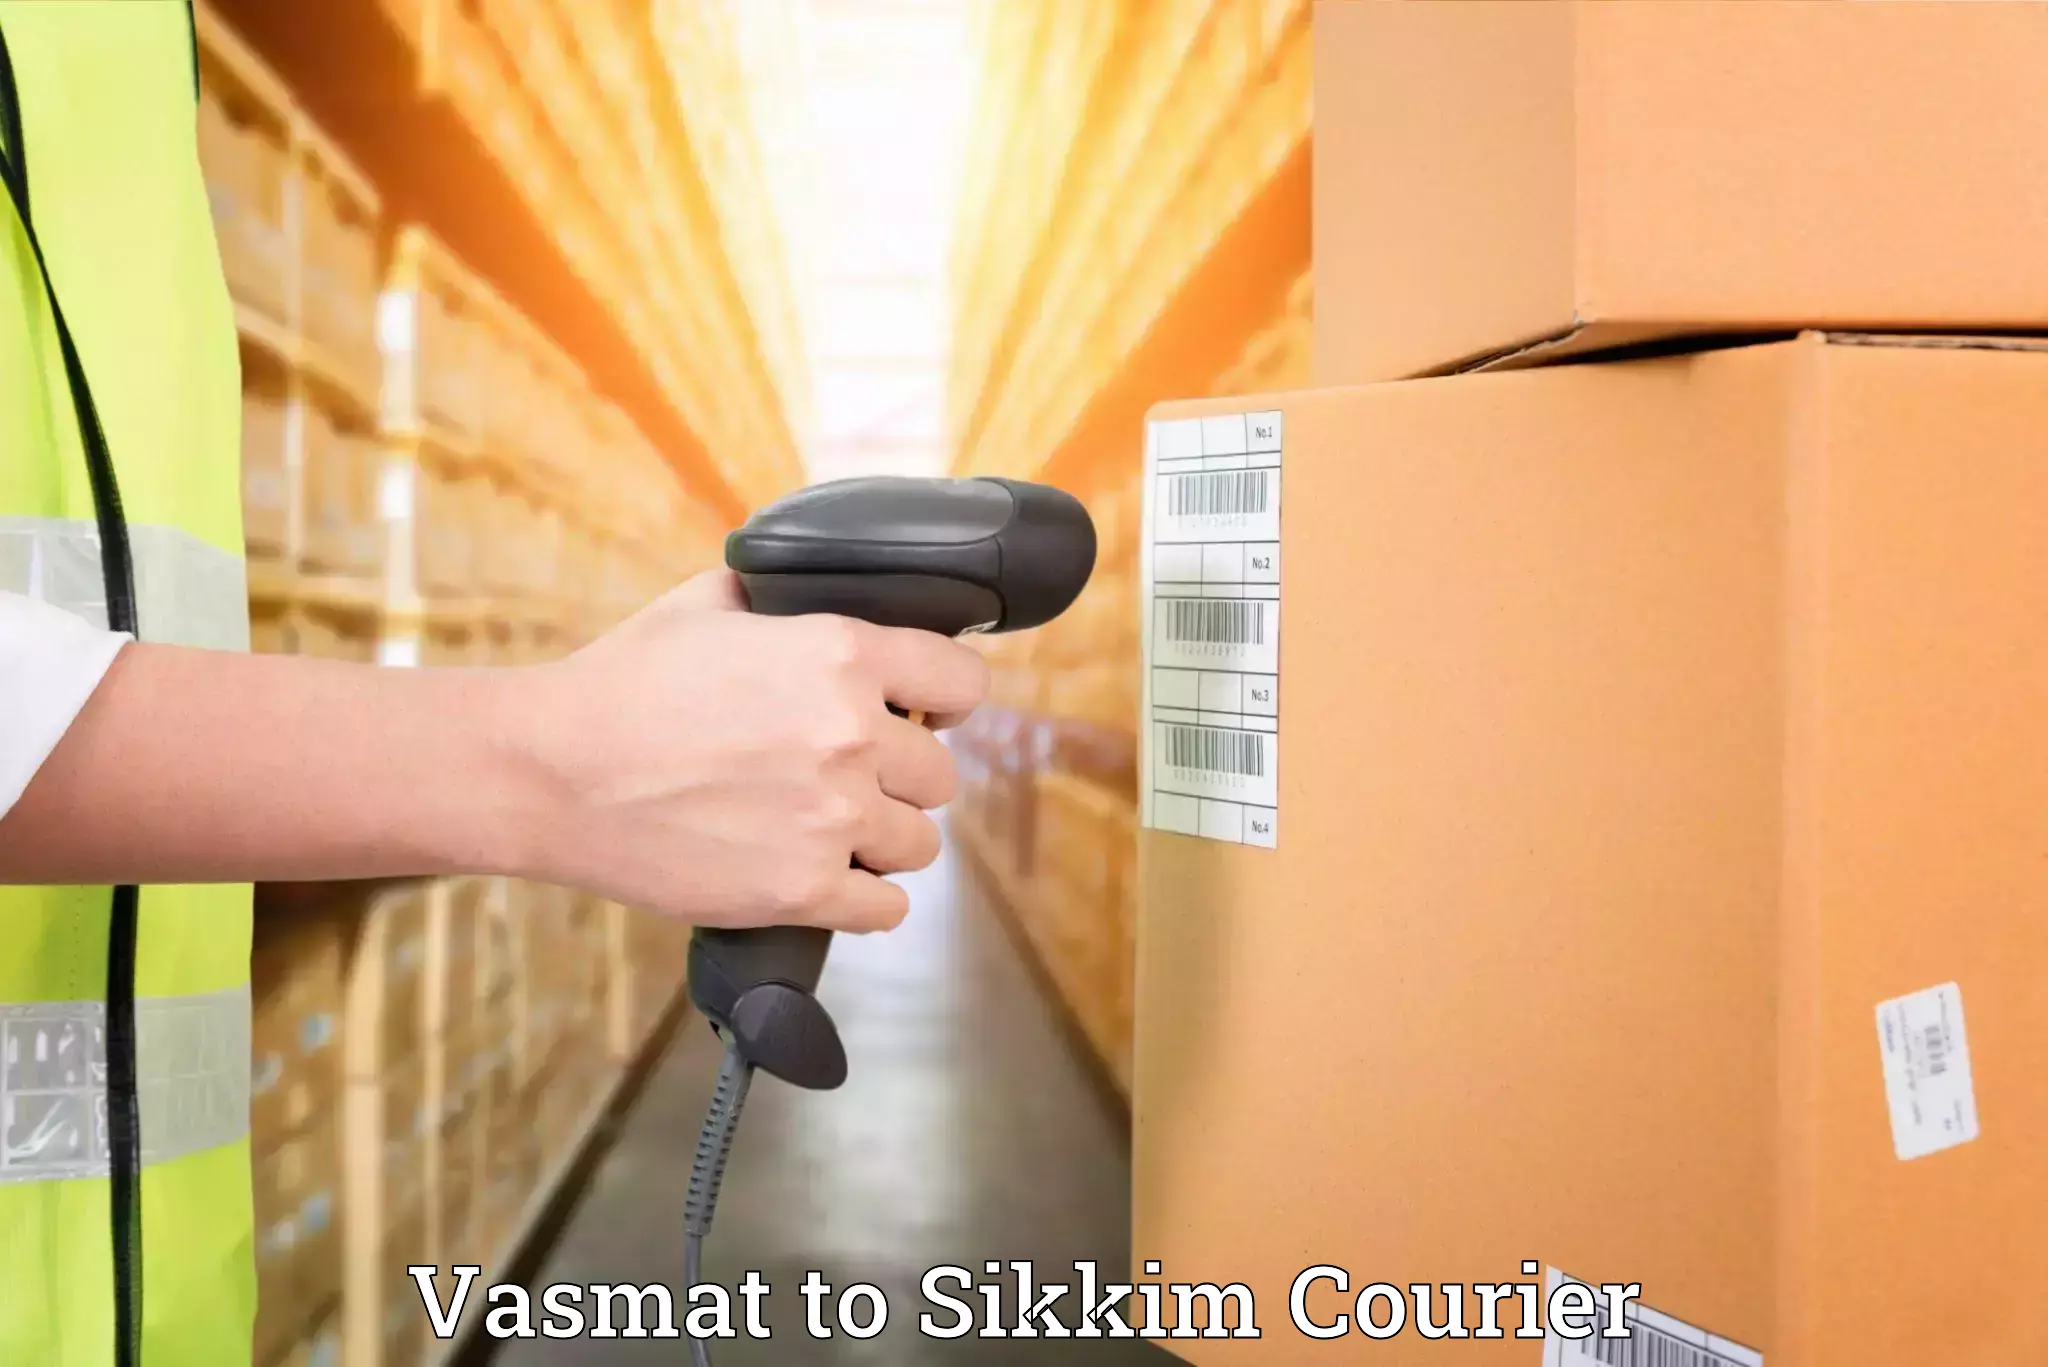 Furniture transport service in Vasmat to Pelling